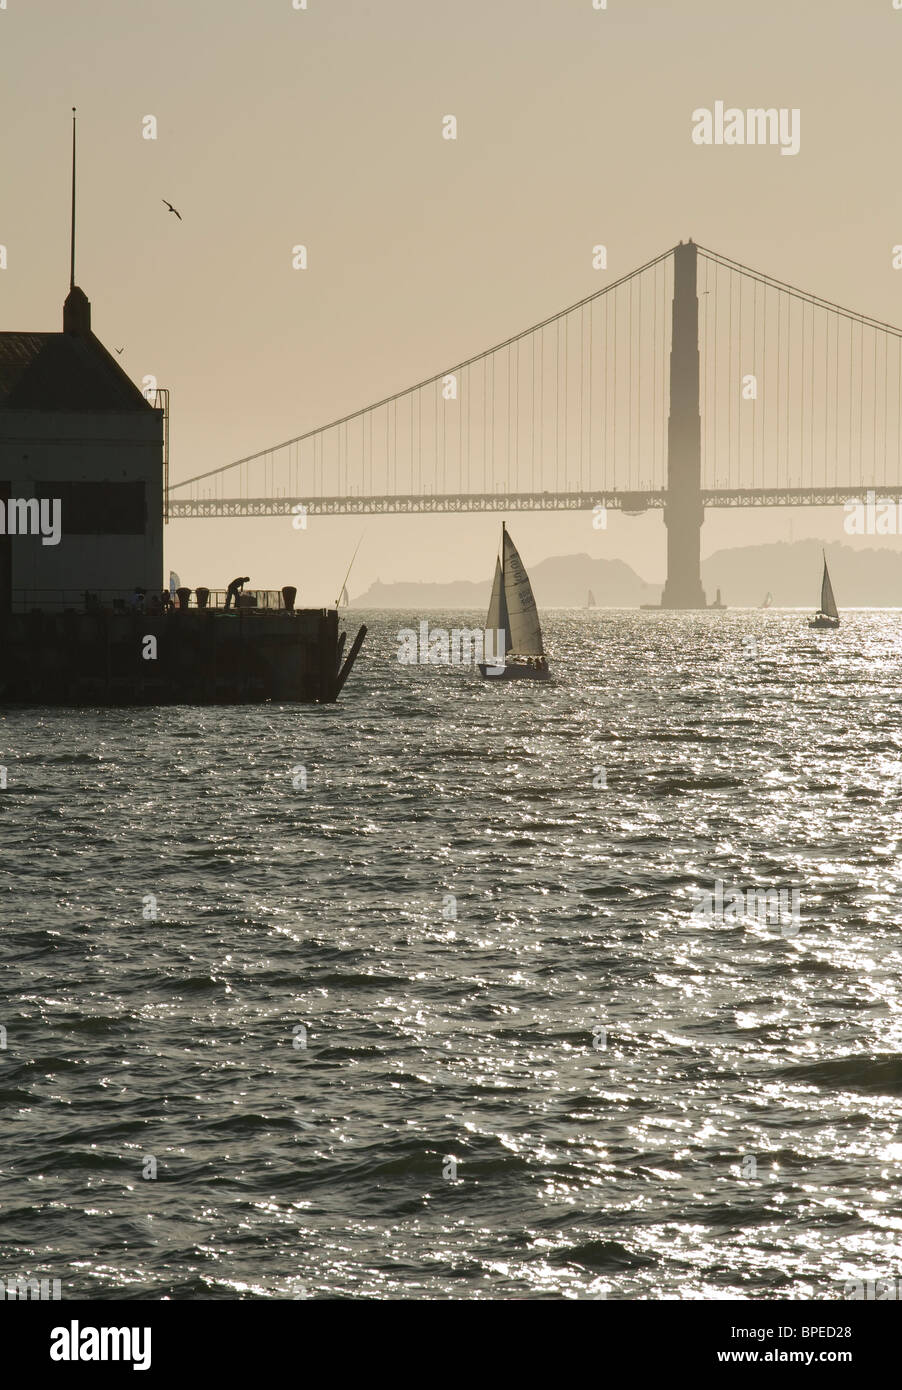 Stati Uniti, California, San Francisco Golden Gate Bridge, barche a vela sulla Baia di San Francisco, pier a Fort Mason, gabbiani, fisherman Foto Stock